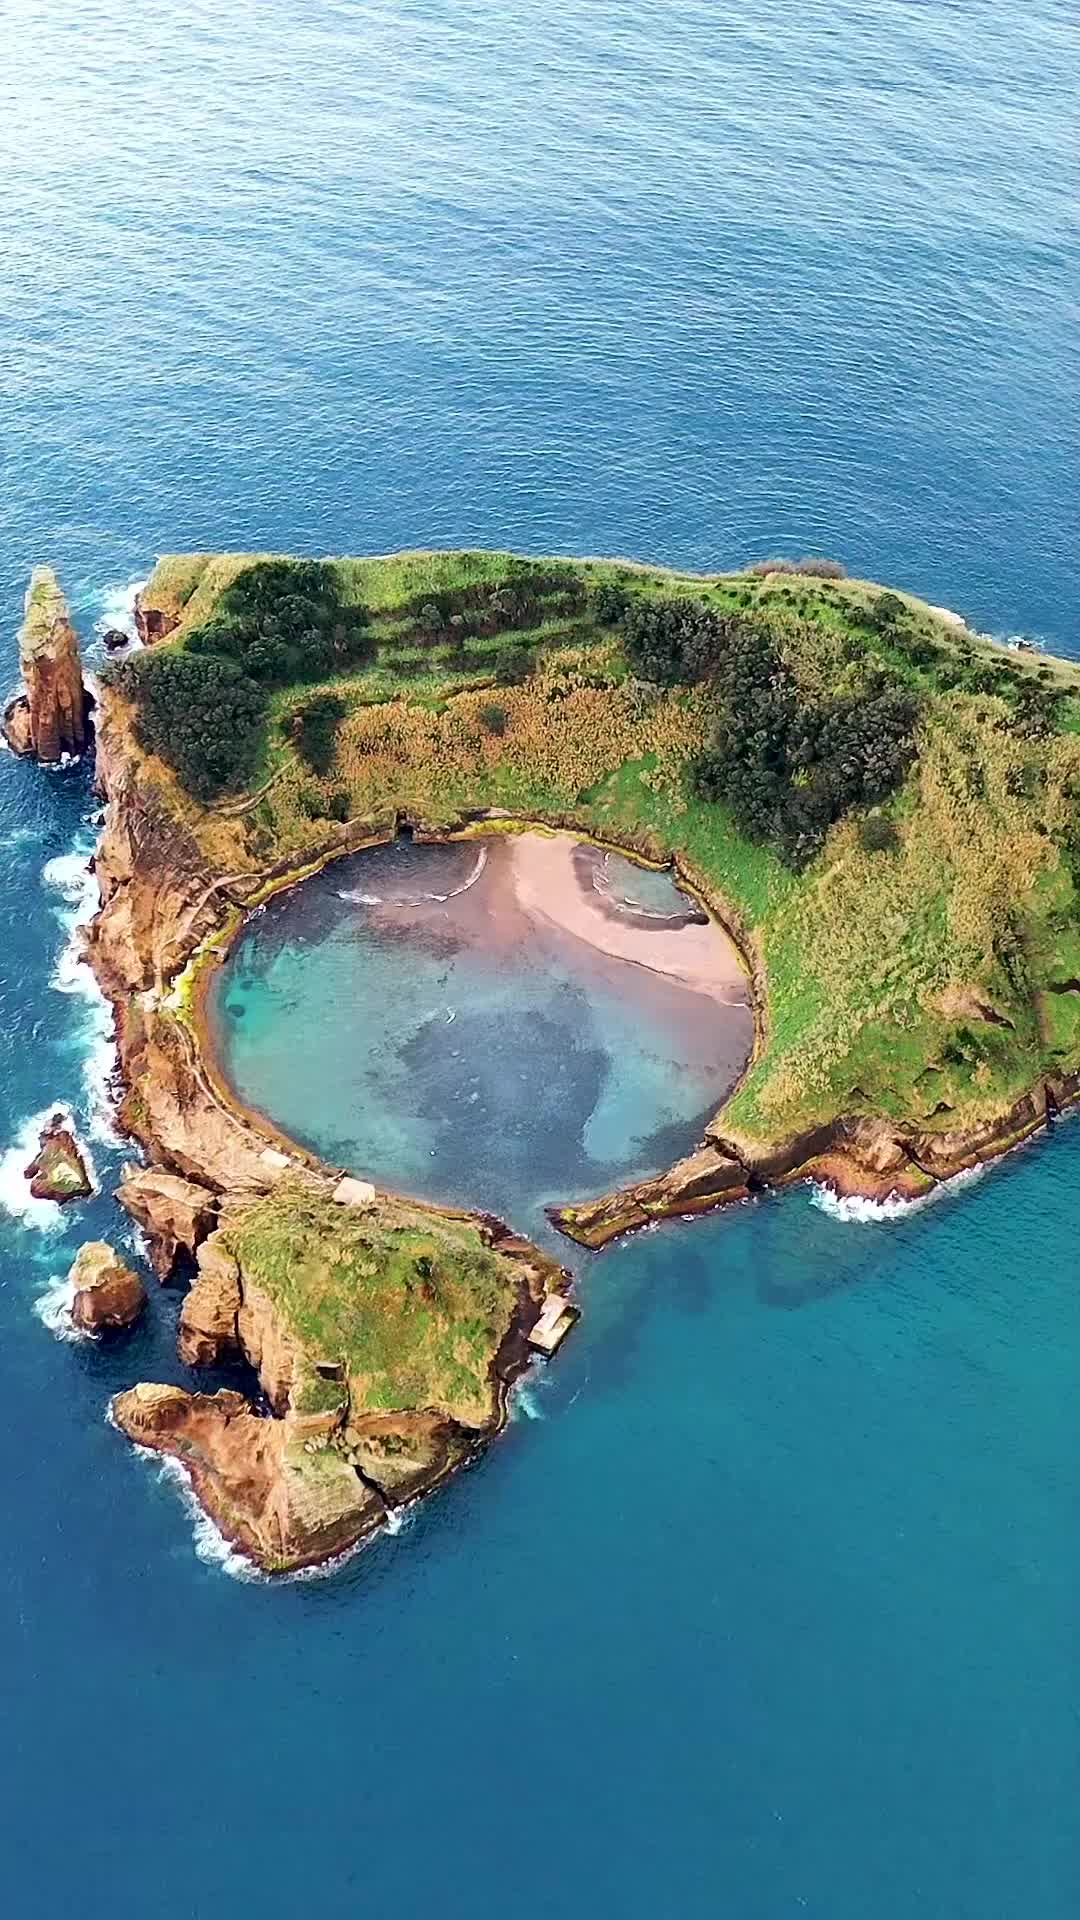 Ilhéu de Vila Franca do Campo, Azores - Aerial View